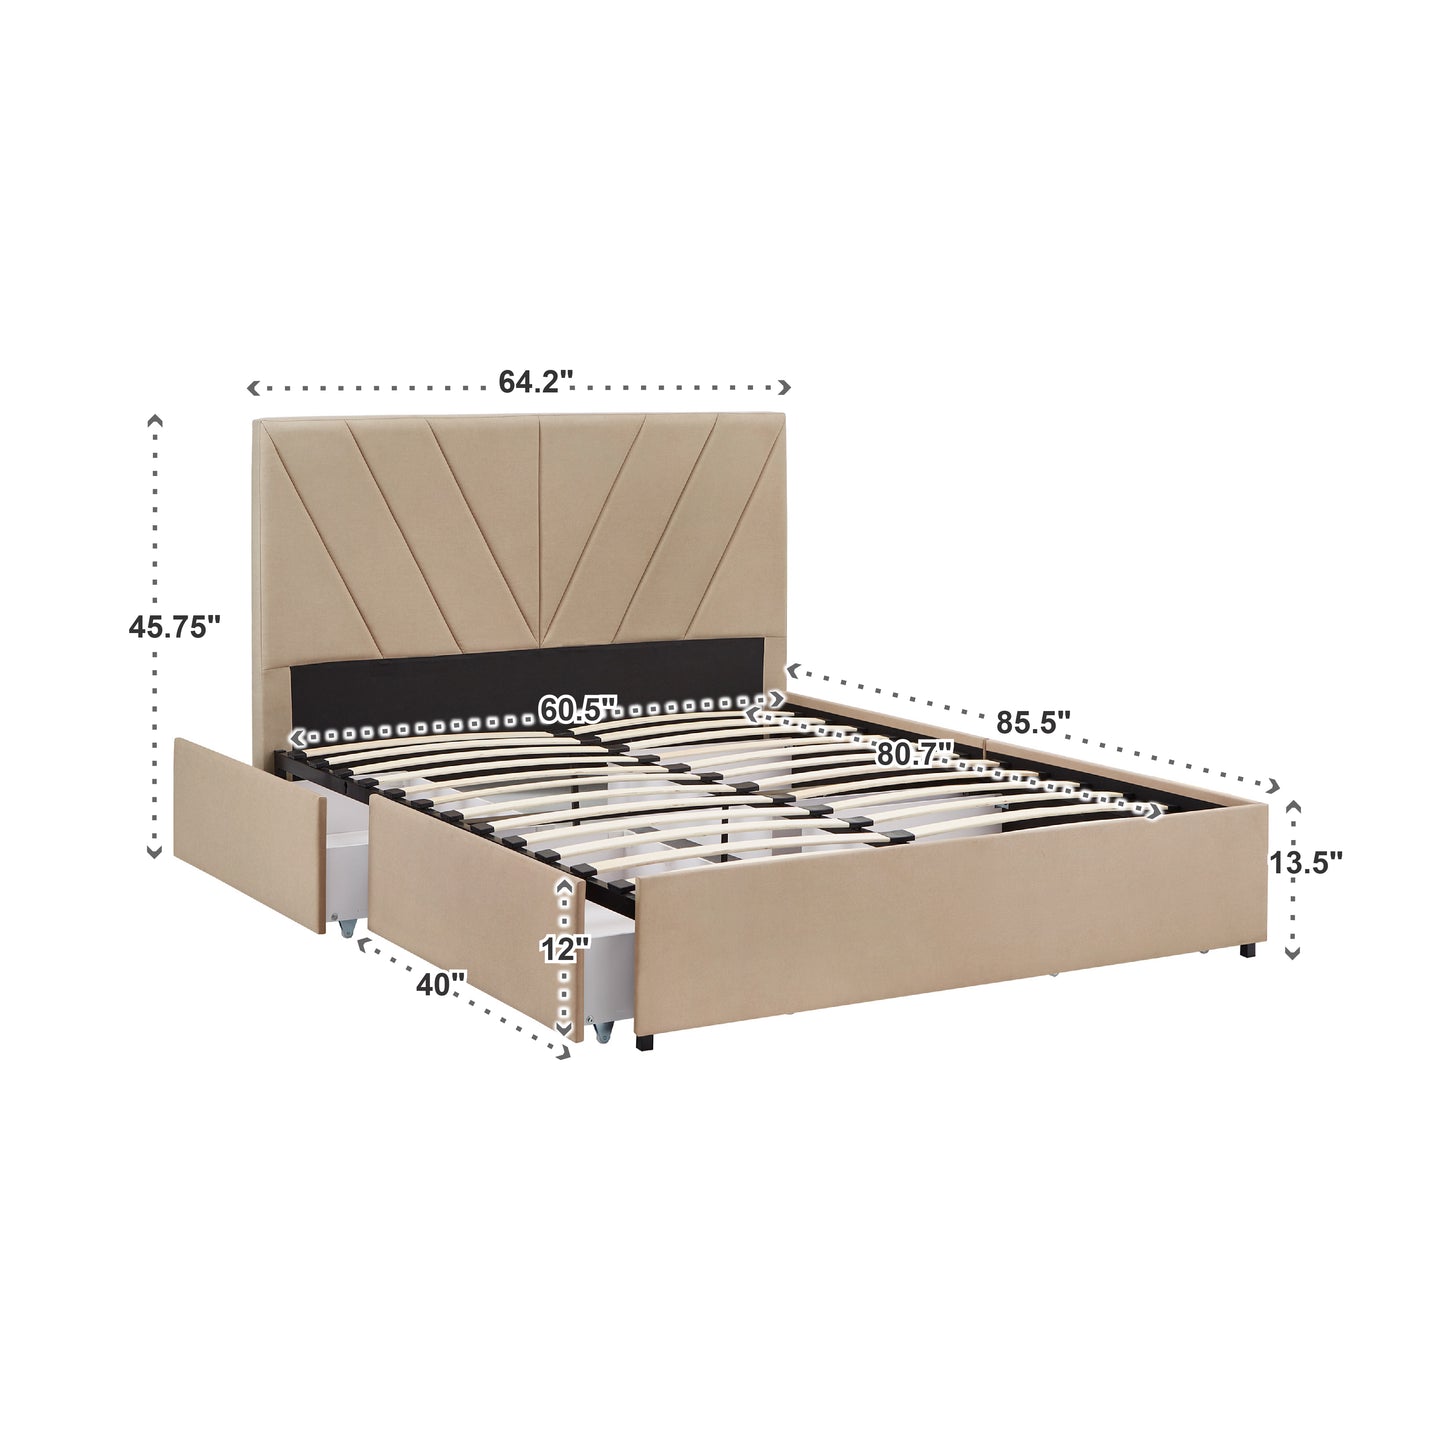 V-Channel Headboard Storage Platform Bed - Queen Size (Queen Size)